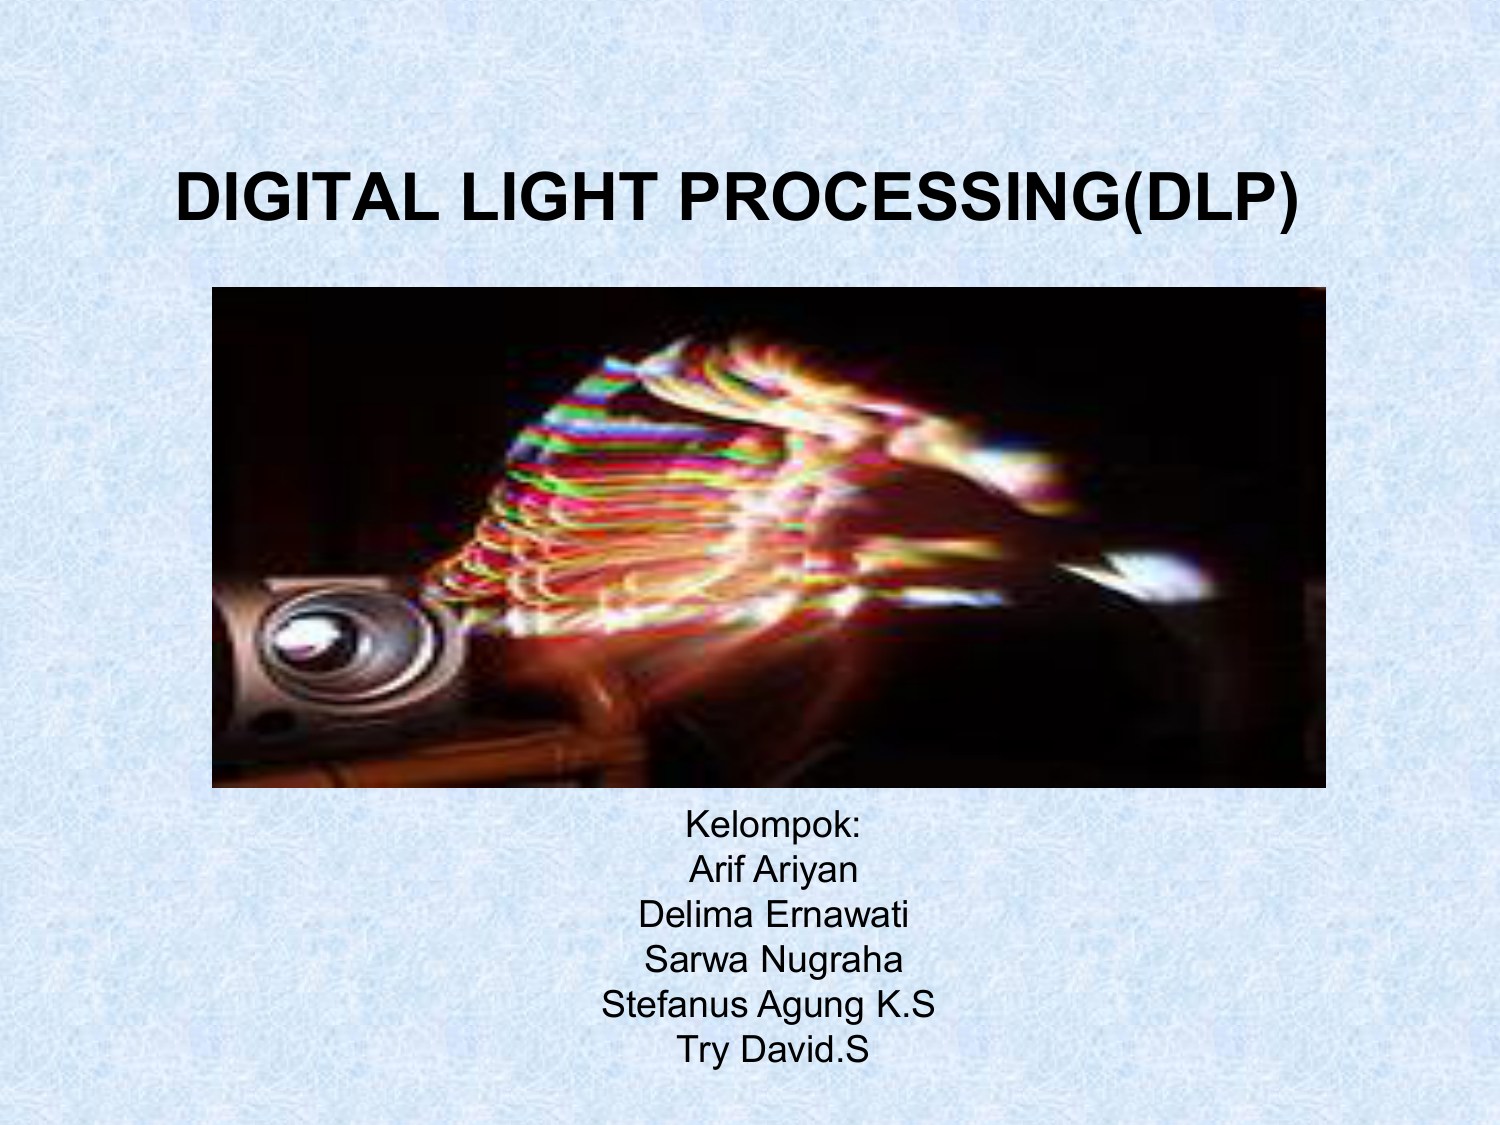 Lighting process. Презентация ДЛП.